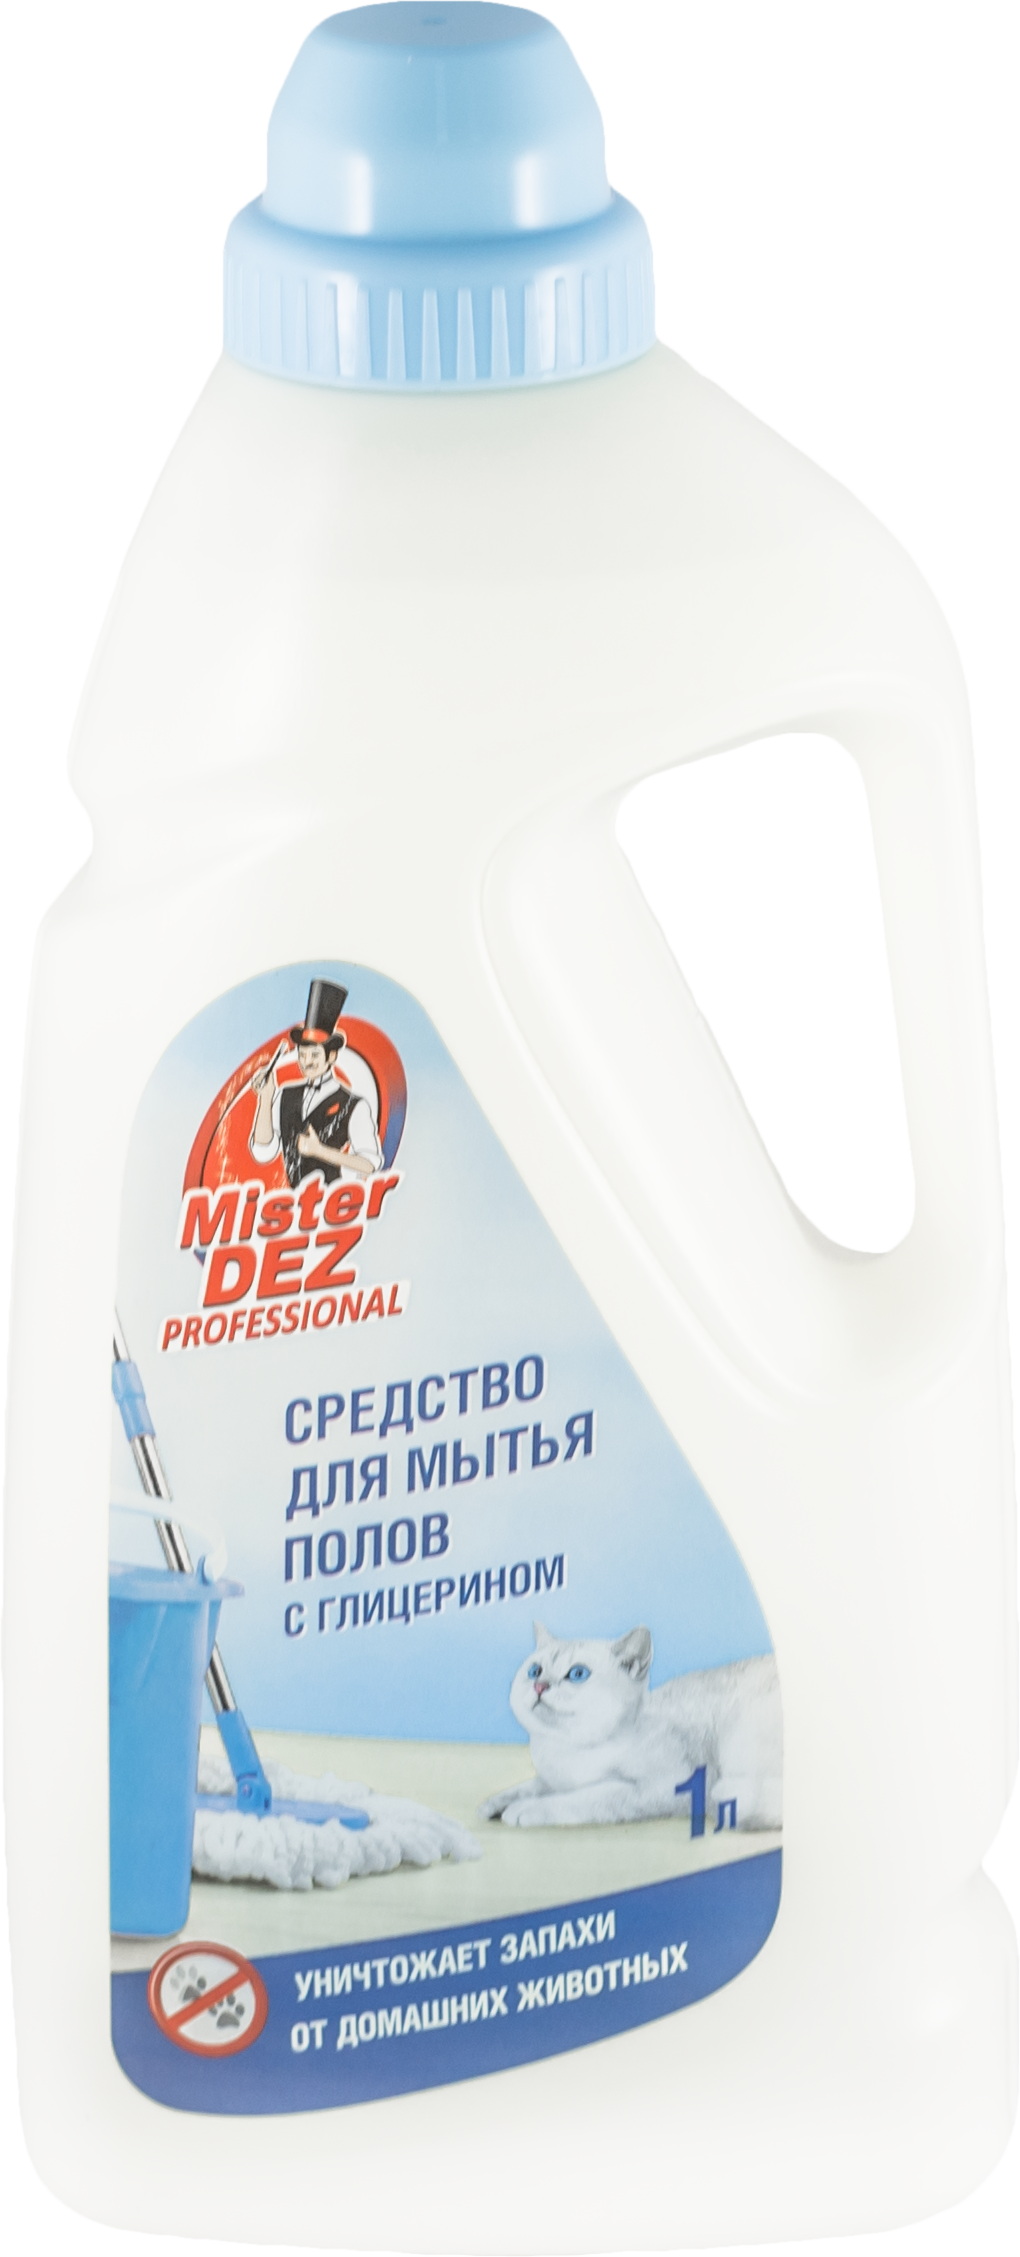 Средство д/мытья пола MISTER DEZ Professional с глицерином 1188к 5,0л. (уничтожает запахи дом. живот